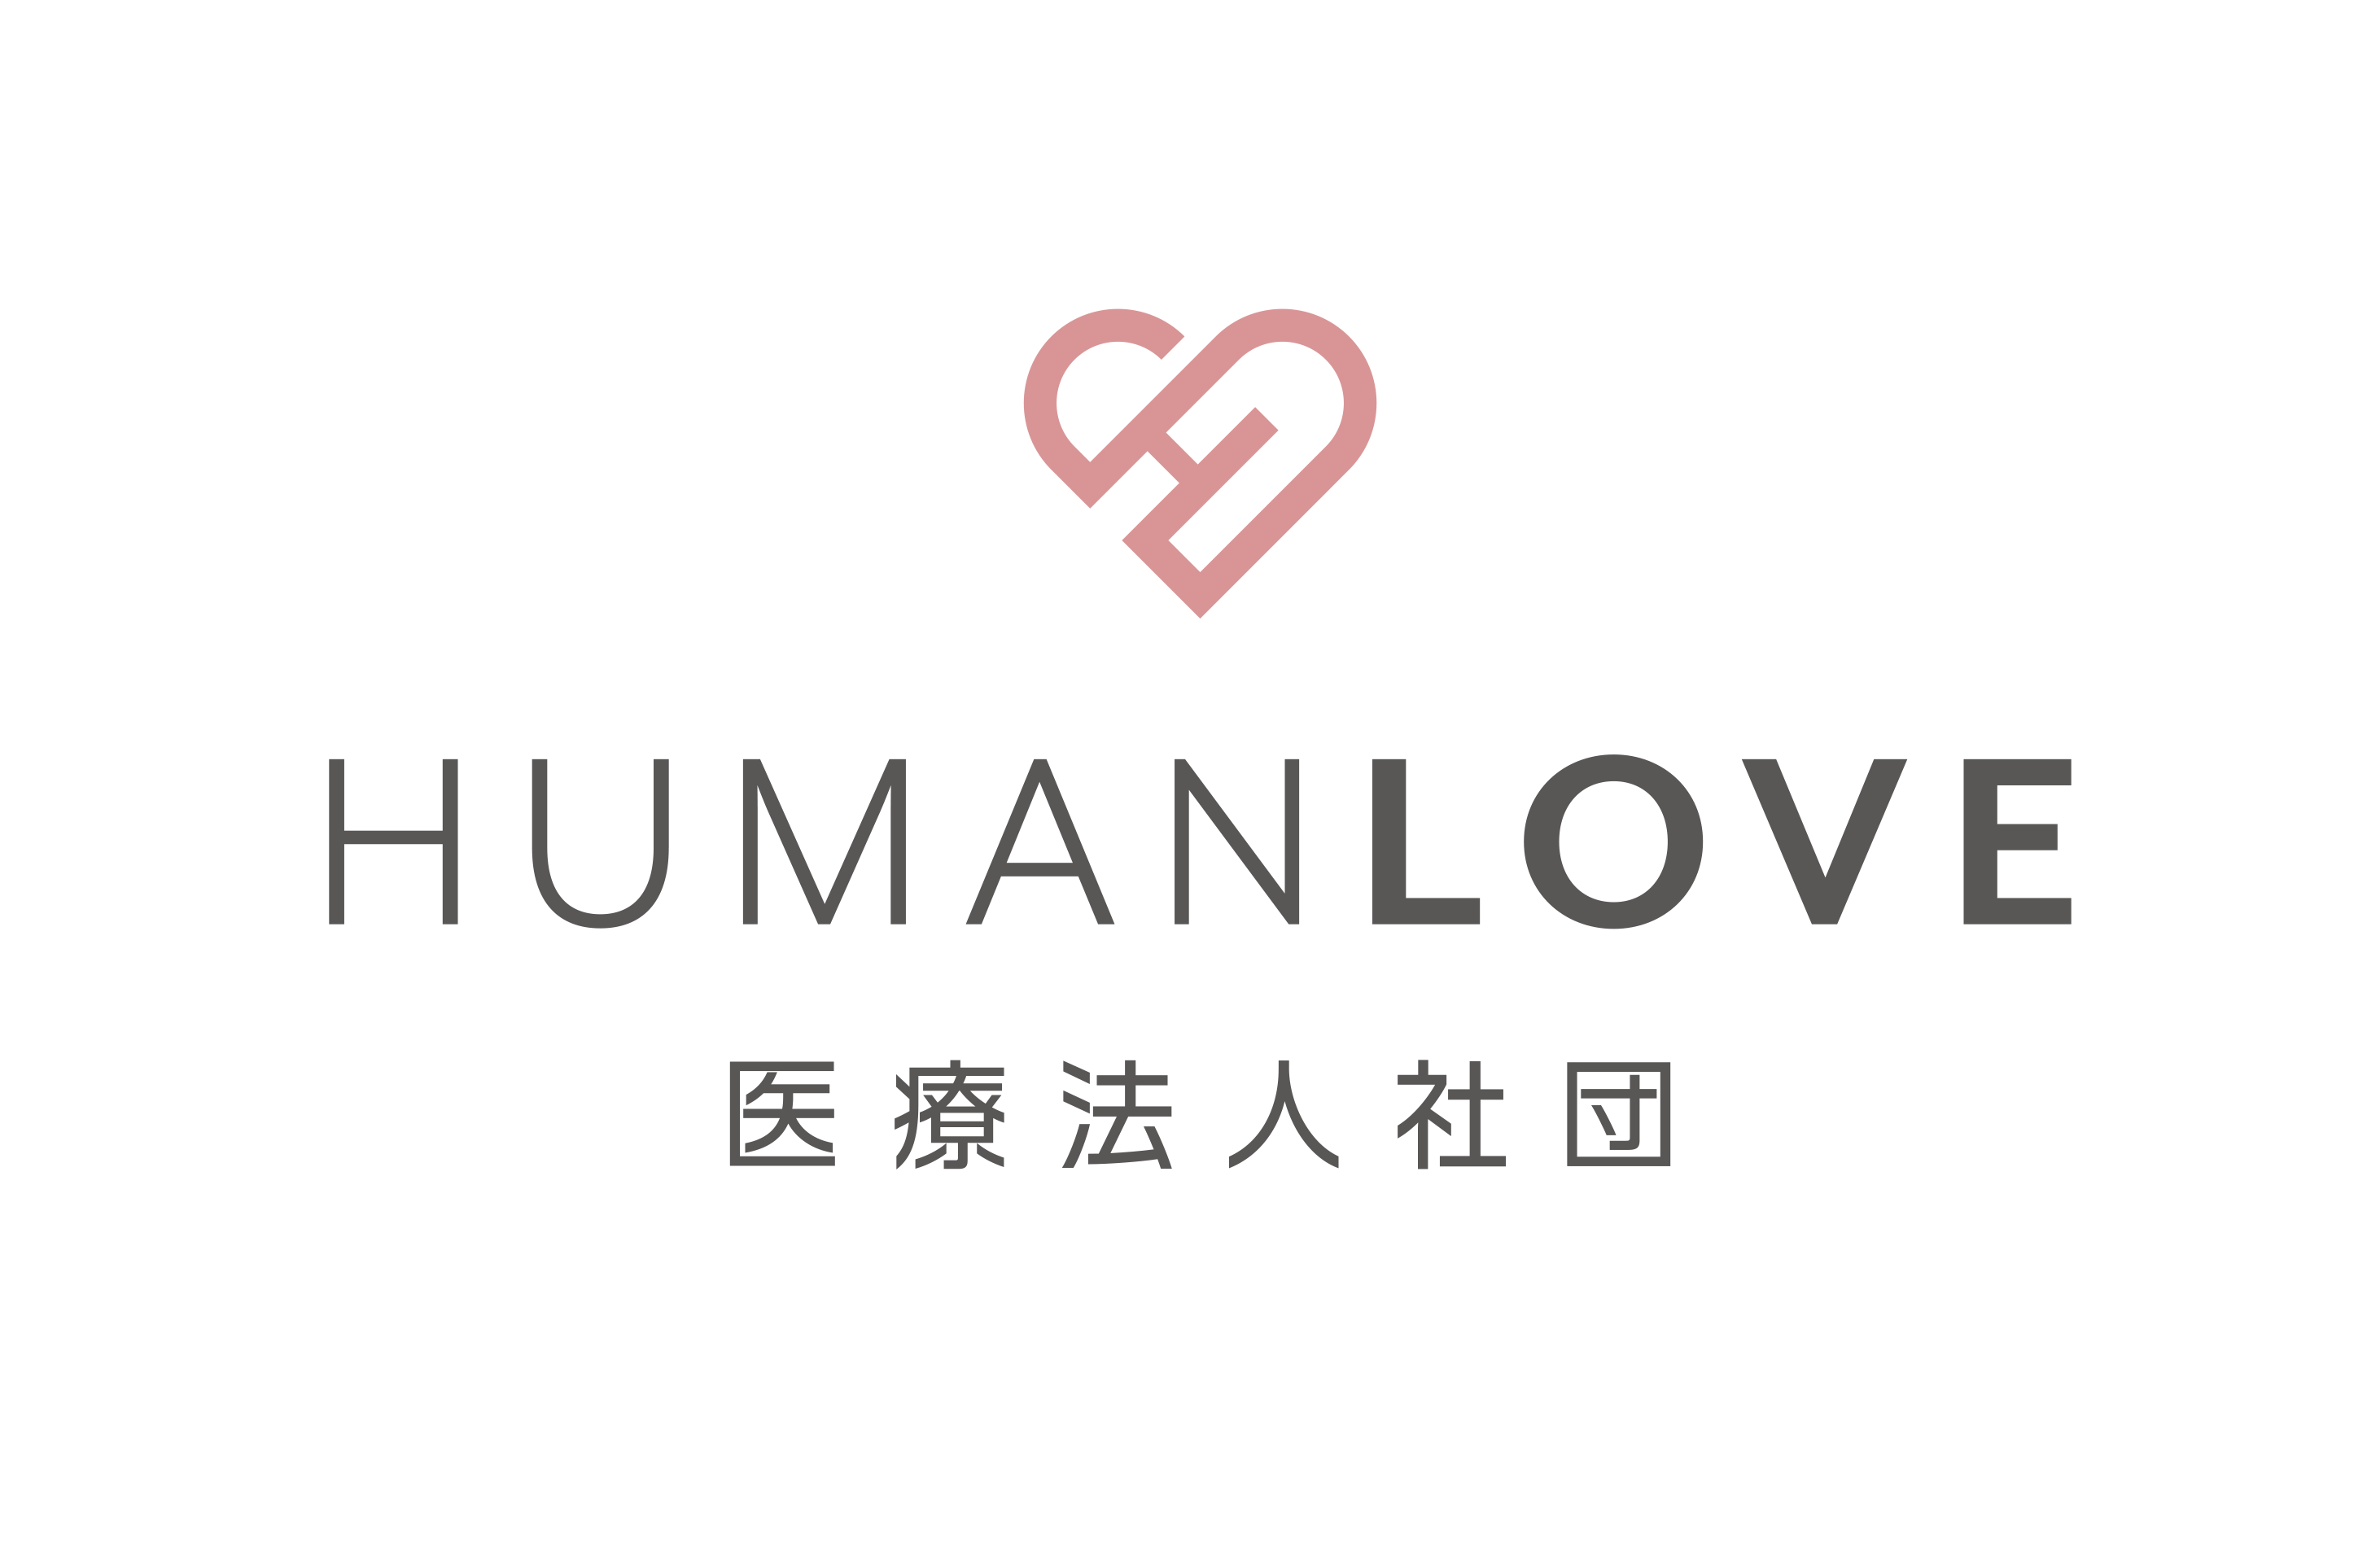 医療法人社団Human love